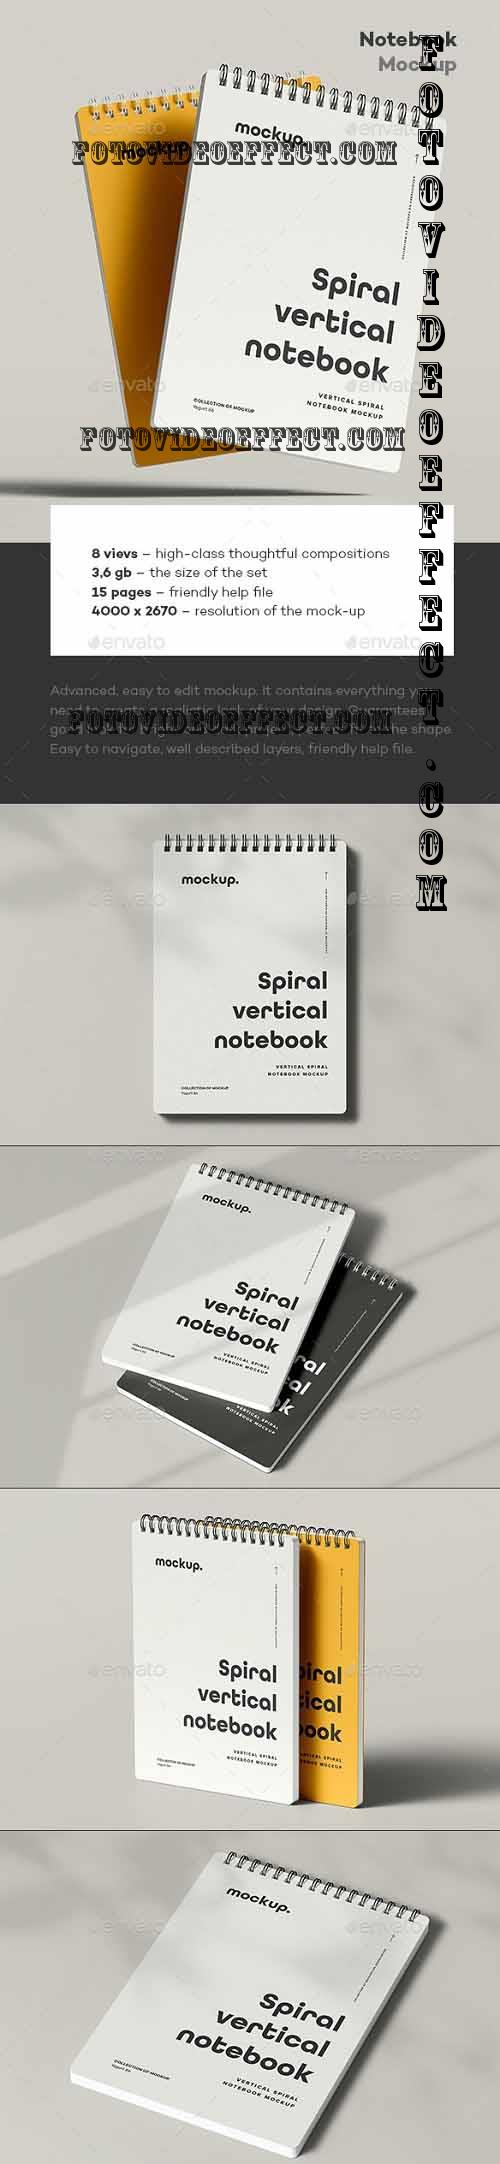 Spiral Notebook Mock-up 2 - 37274564